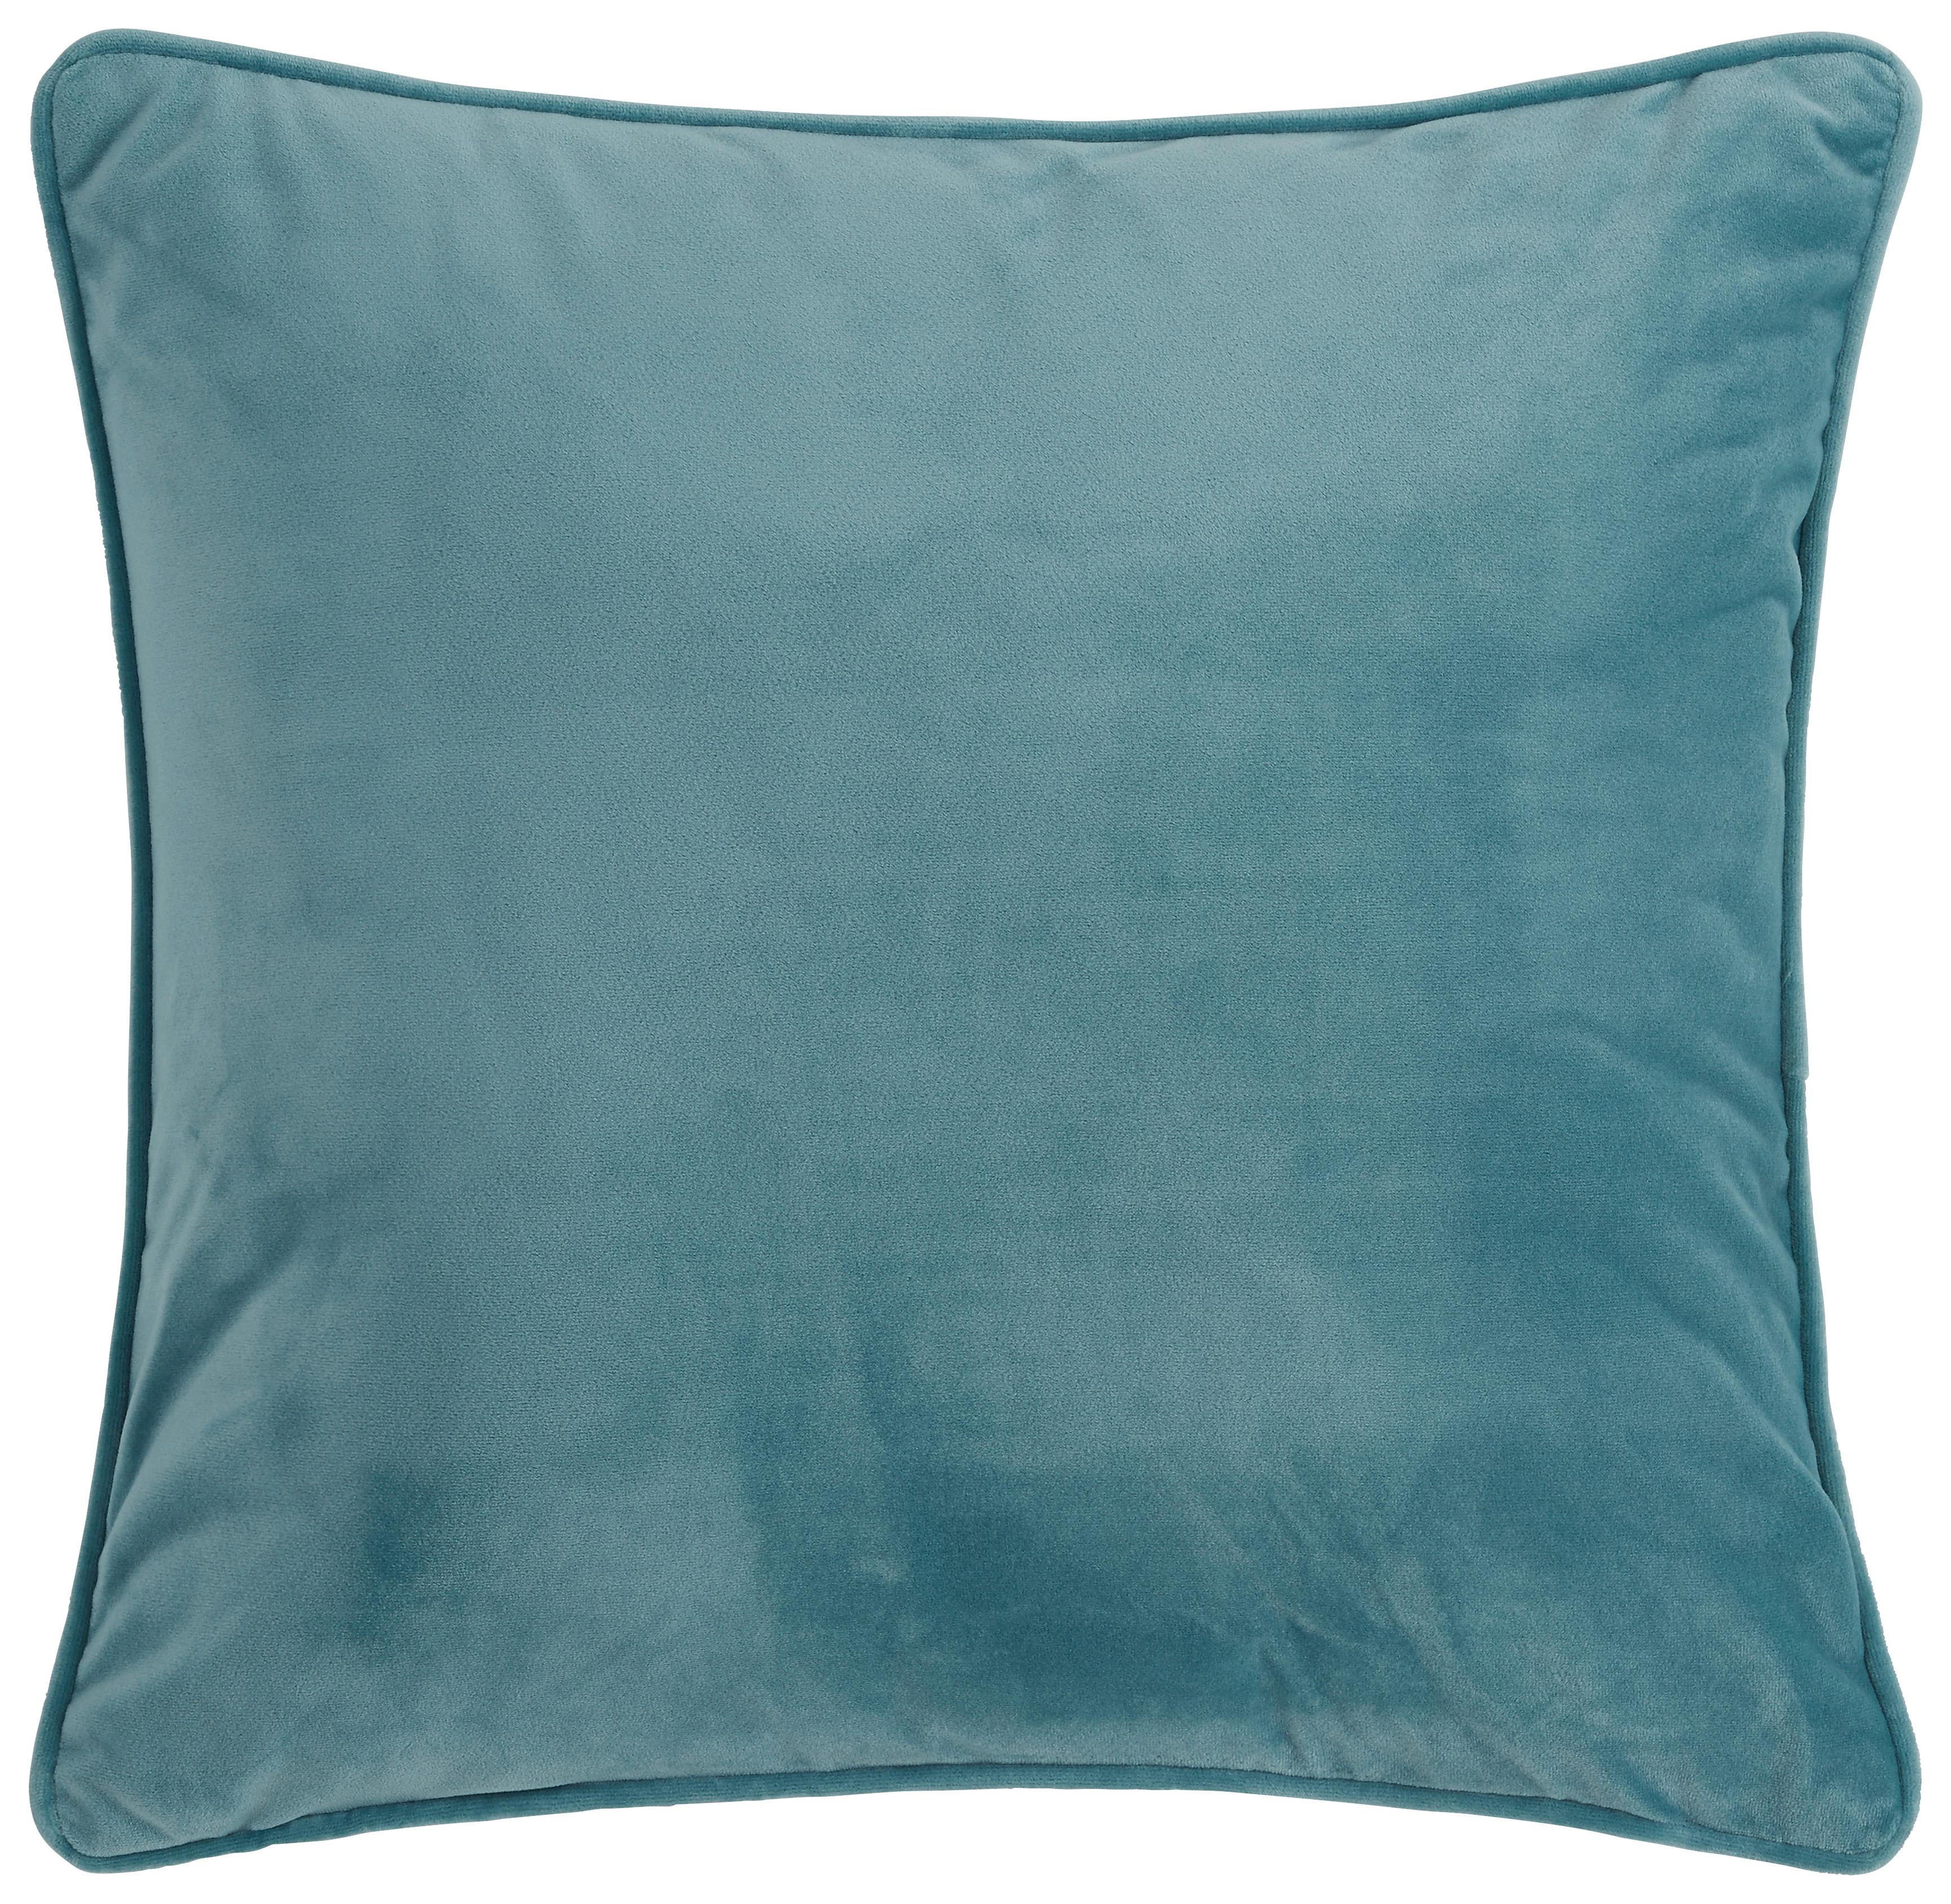 Okrasna Blazina Viola - modra, tekstil (45/45cm) - Premium Living